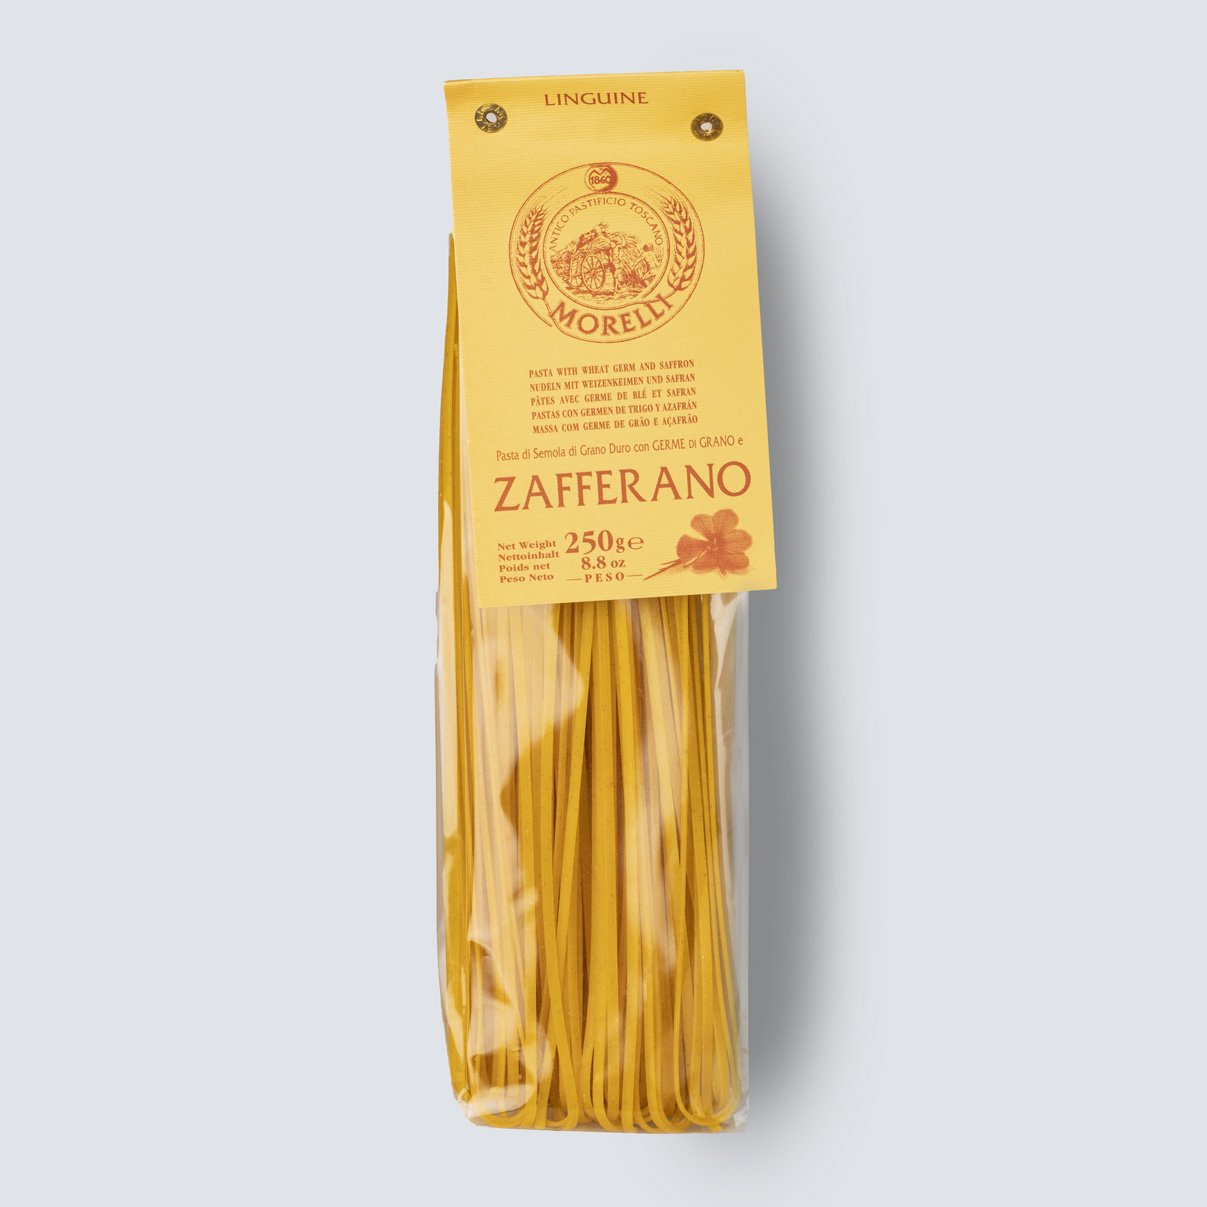 Linguine allo Zafferano con germe di grano (4x250gr) - Pastificio Morelli